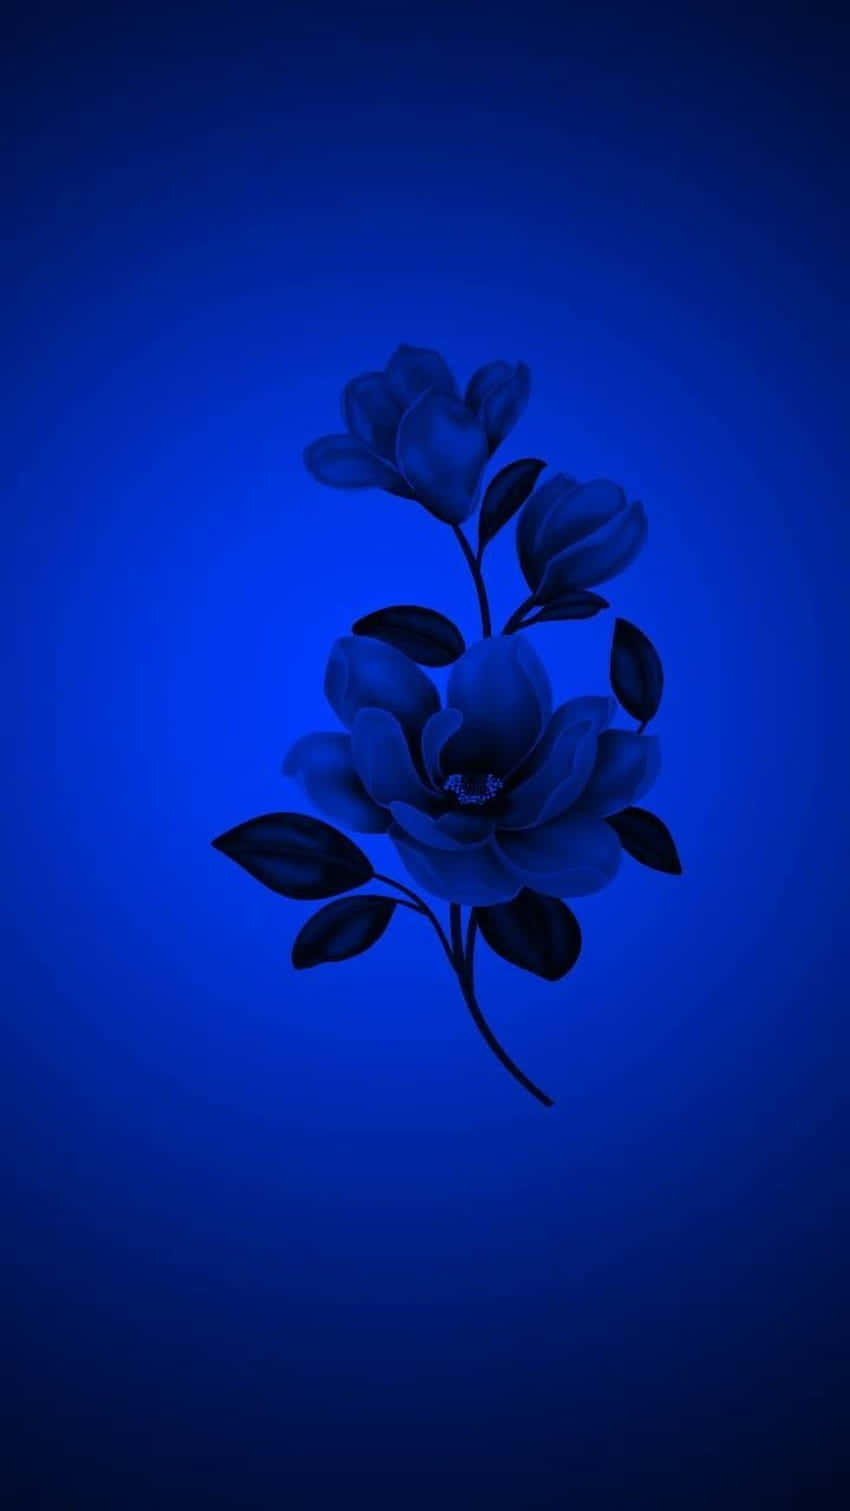 Blue Monochrome Floral Aesthetic.jpg Wallpaper